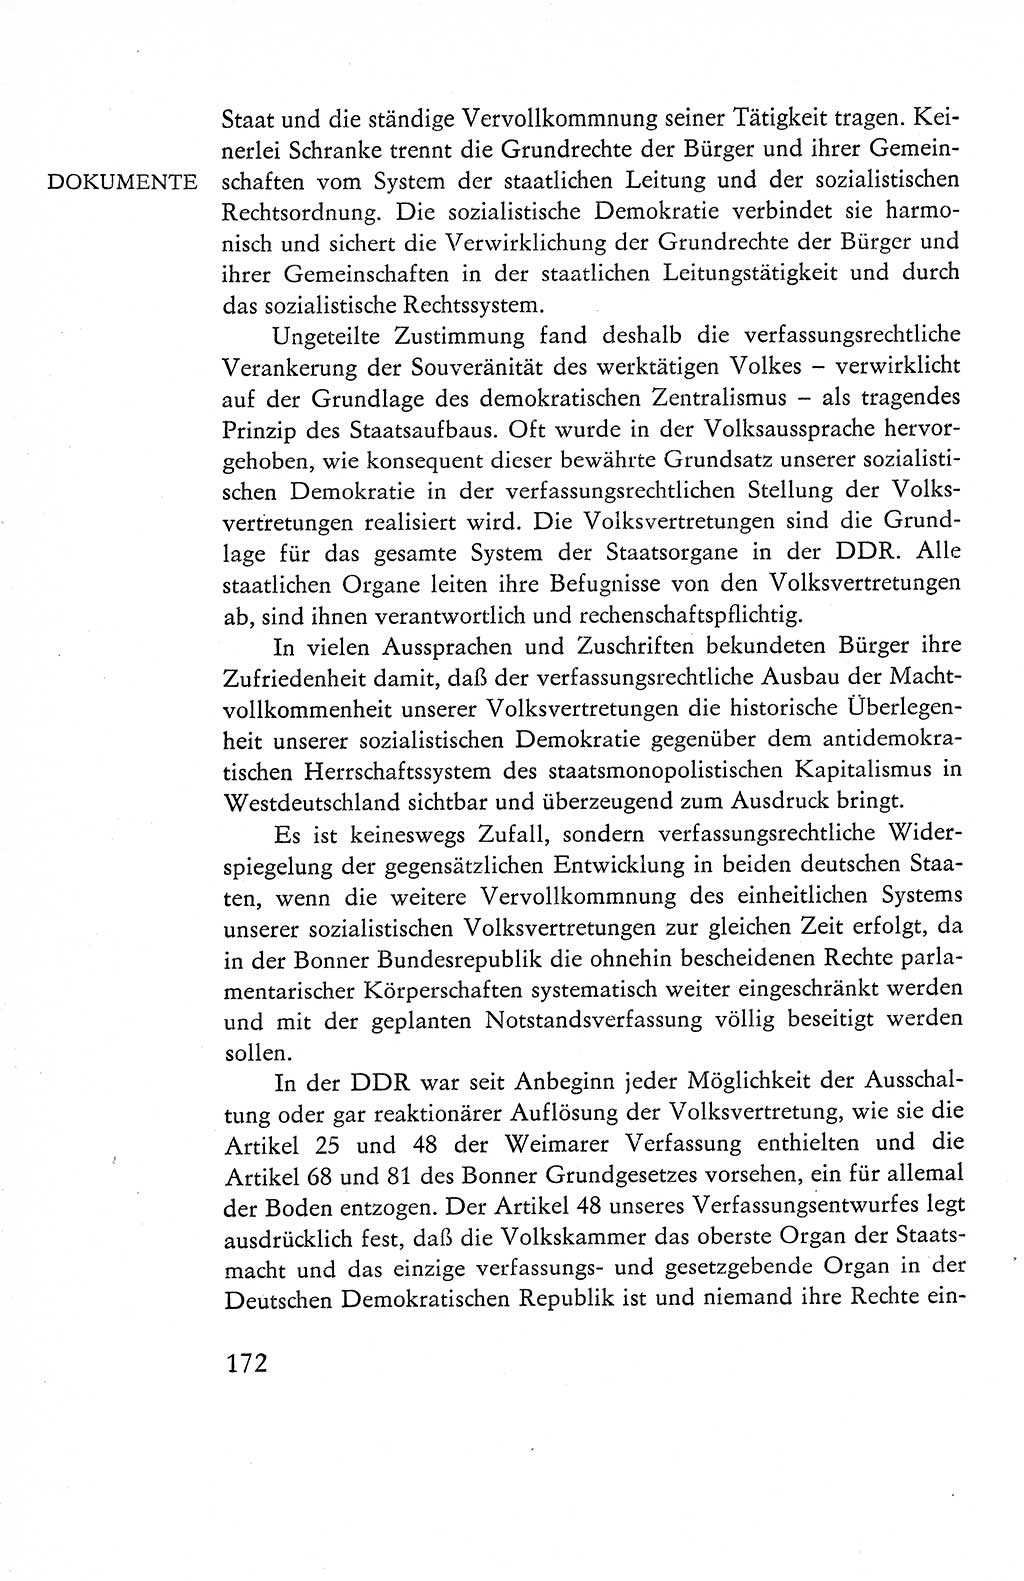 Verfassung der Deutschen Demokratischen Republik (DDR), Dokumente, Kommentar 1969, Band 1, Seite 172 (Verf. DDR Dok. Komm. 1969, Bd. 1, S. 172)